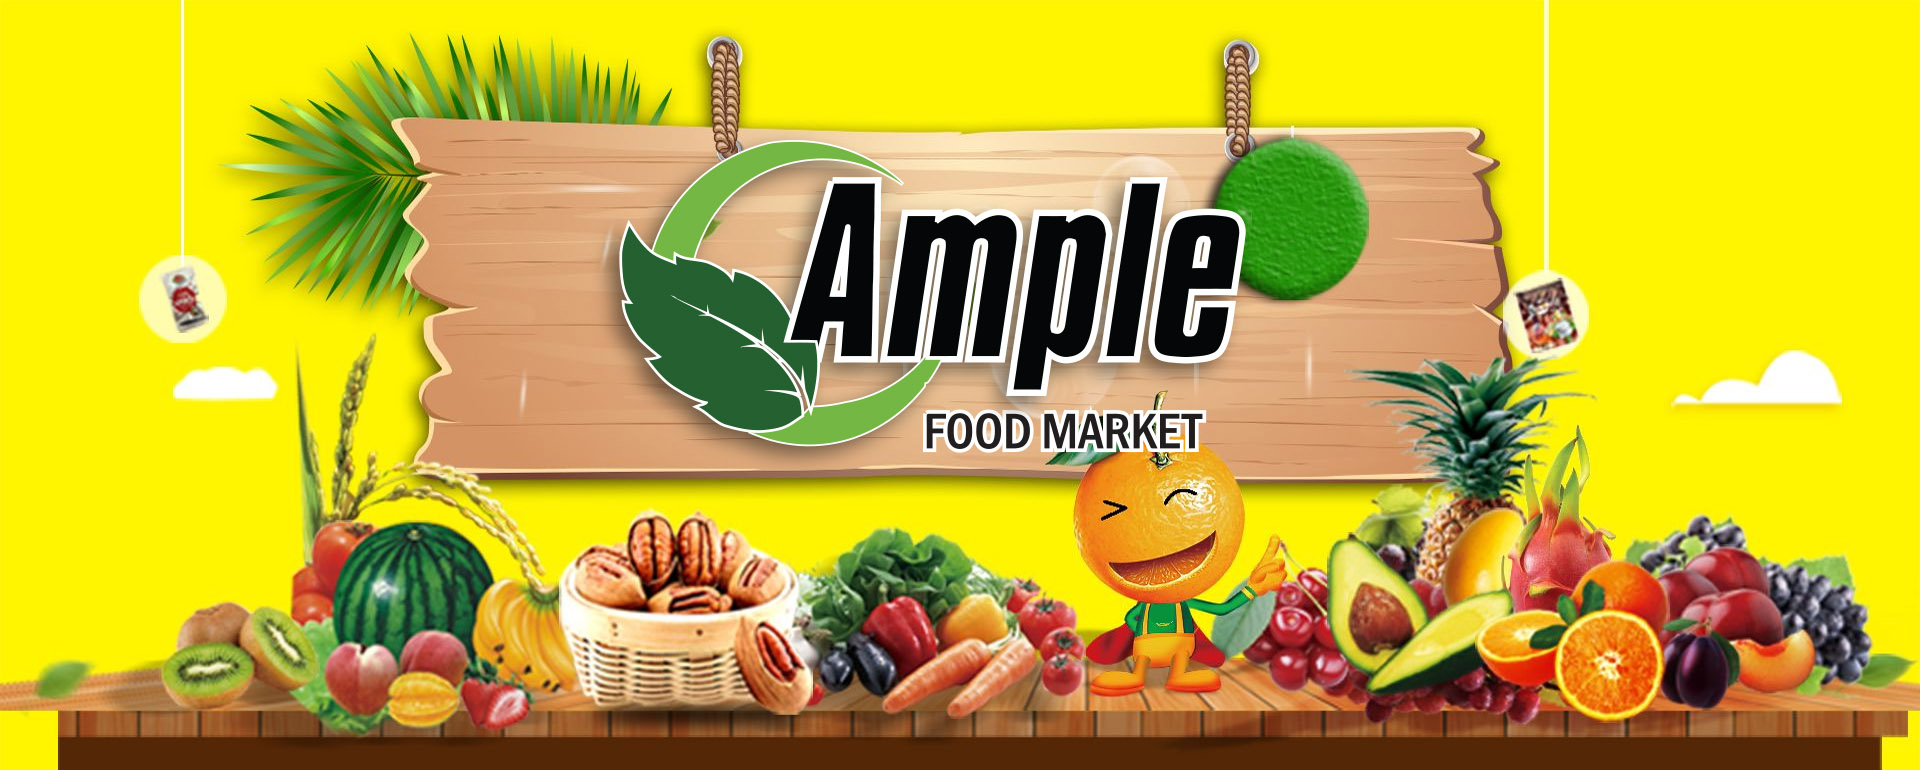 Ample Food Market